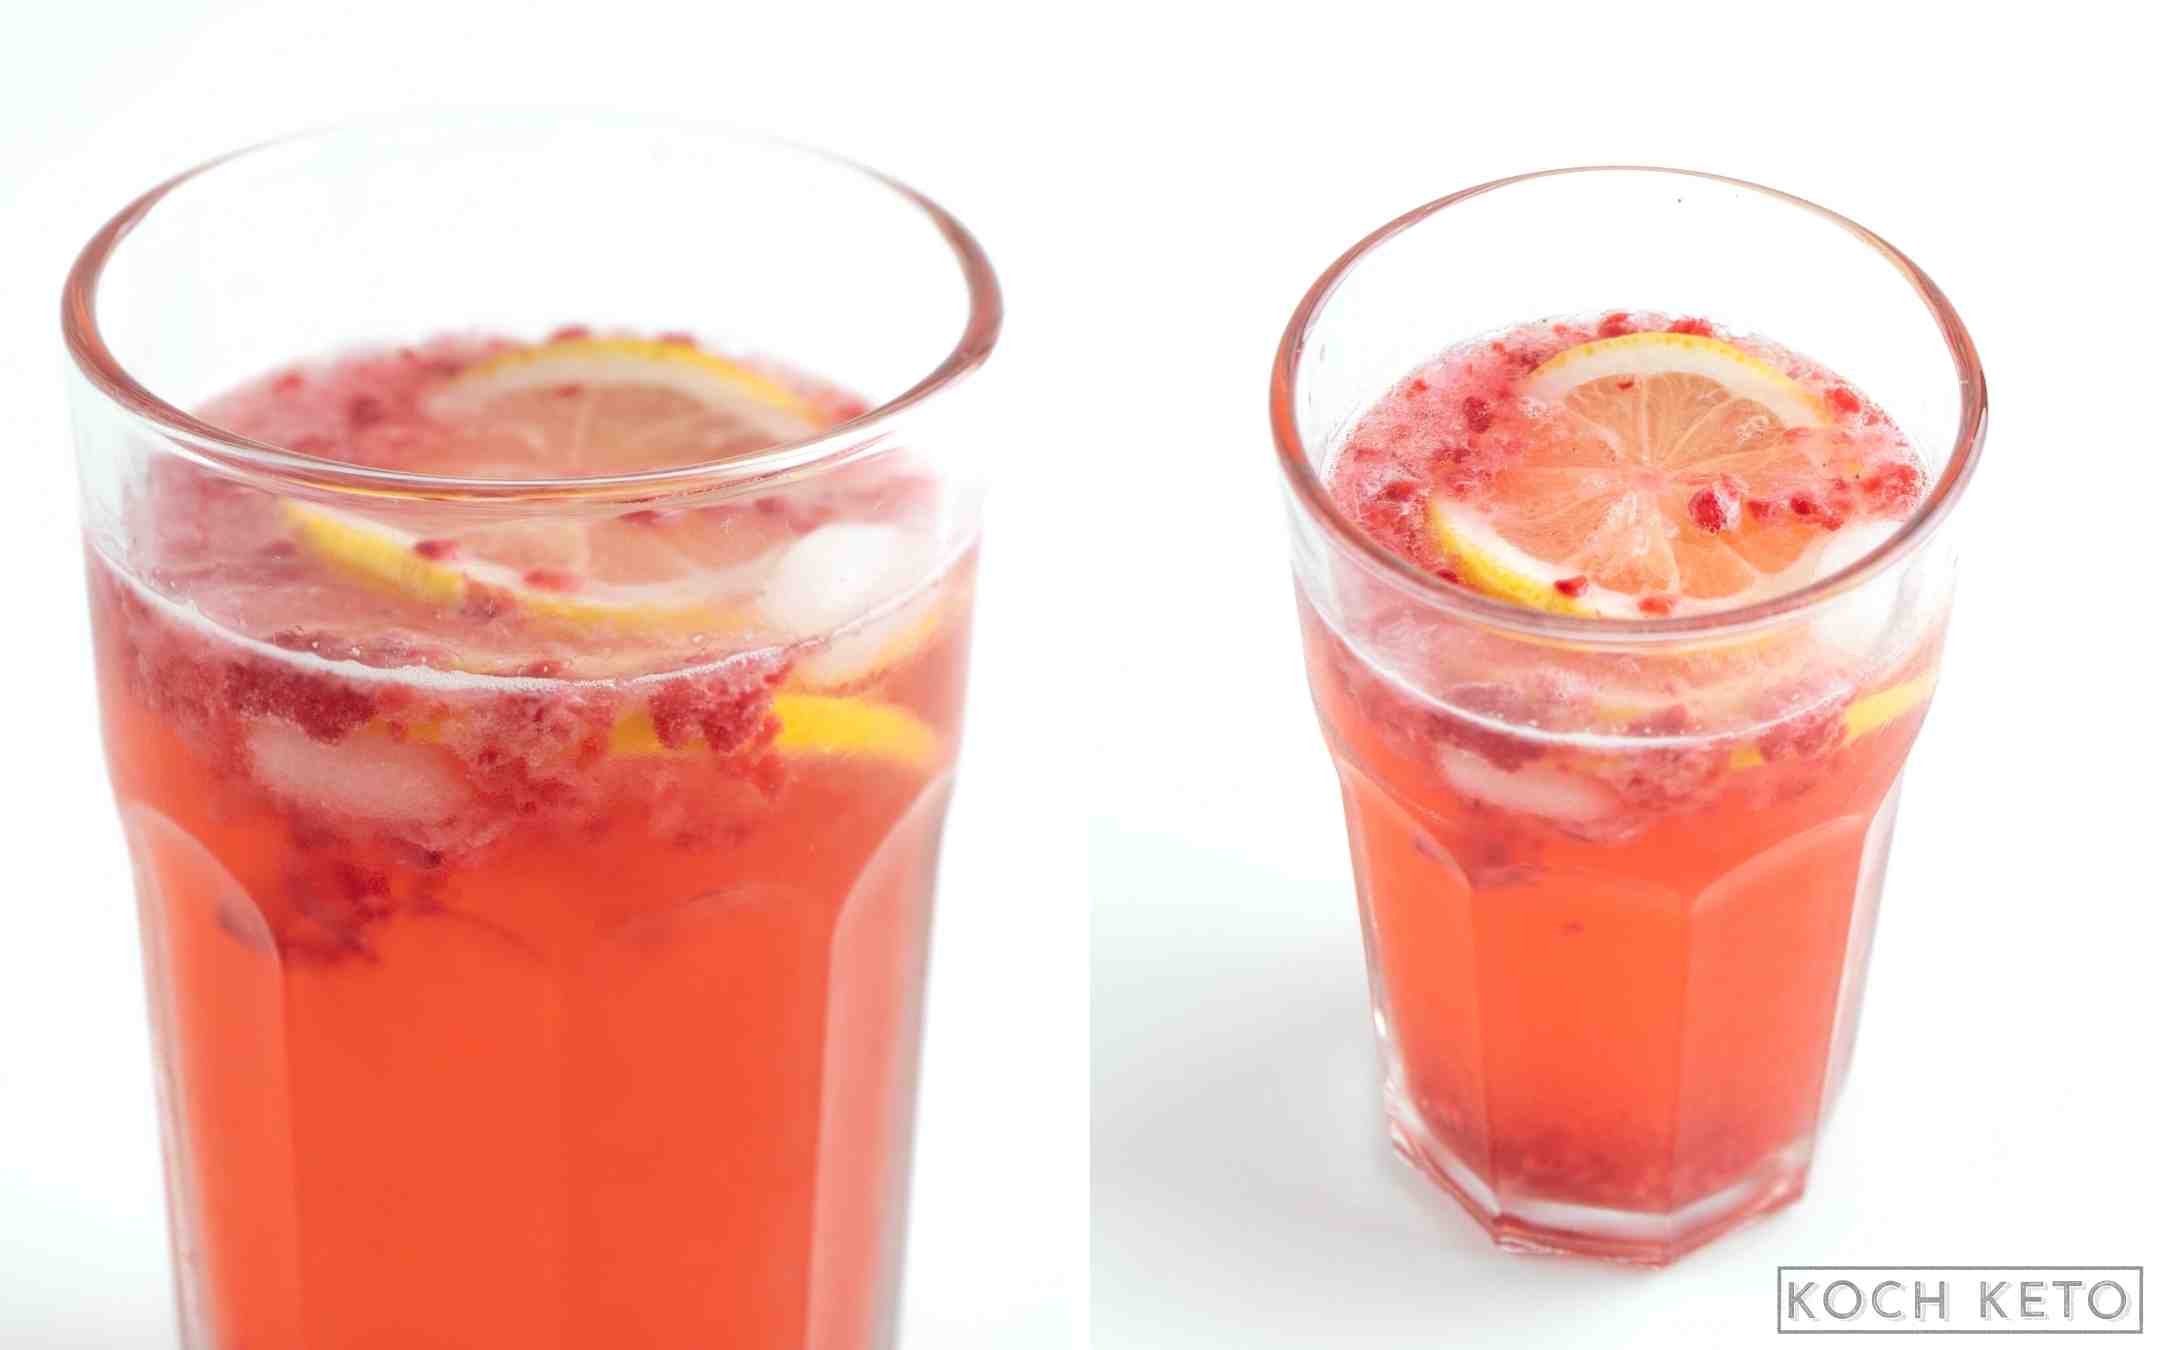 Erfrischende Low Carb Himbeer-Zitronen-Schorle ohne Zucker als Getränk ohne Kohlenhydrate Desktop Image Collage